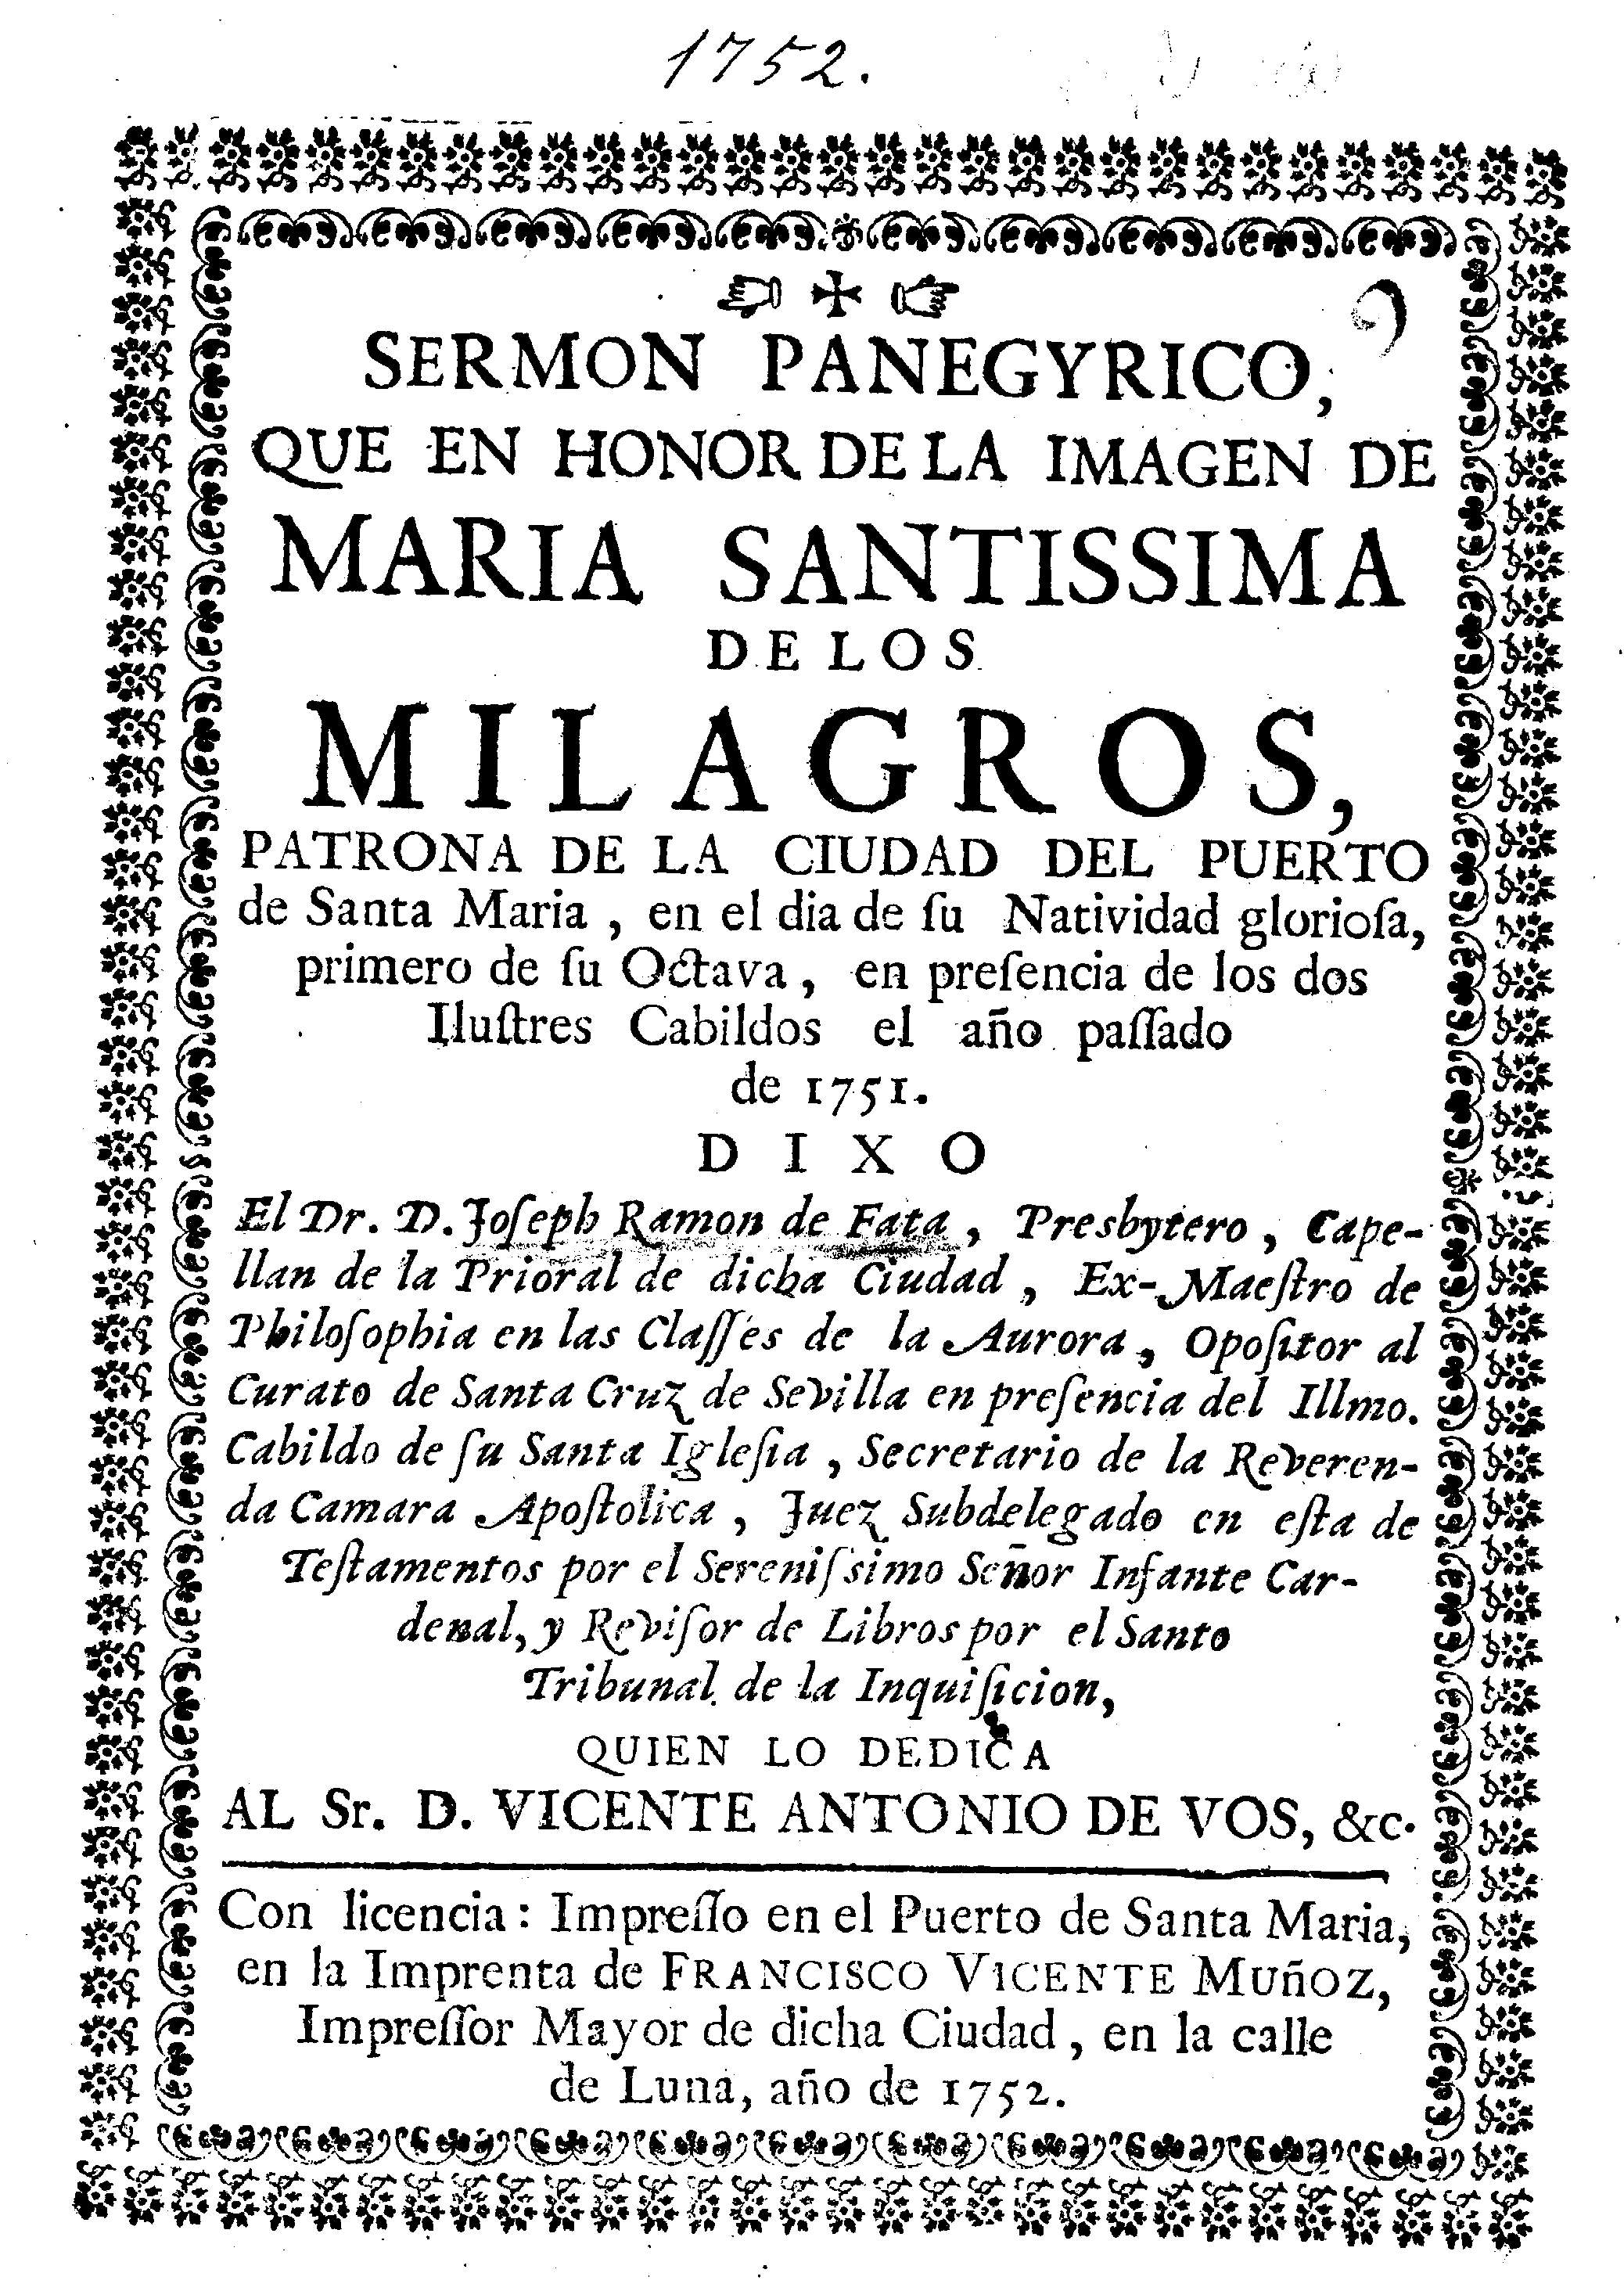 Sermon panegyrico, que en honor de la imagen de Maria Santissima de los Milagros ...